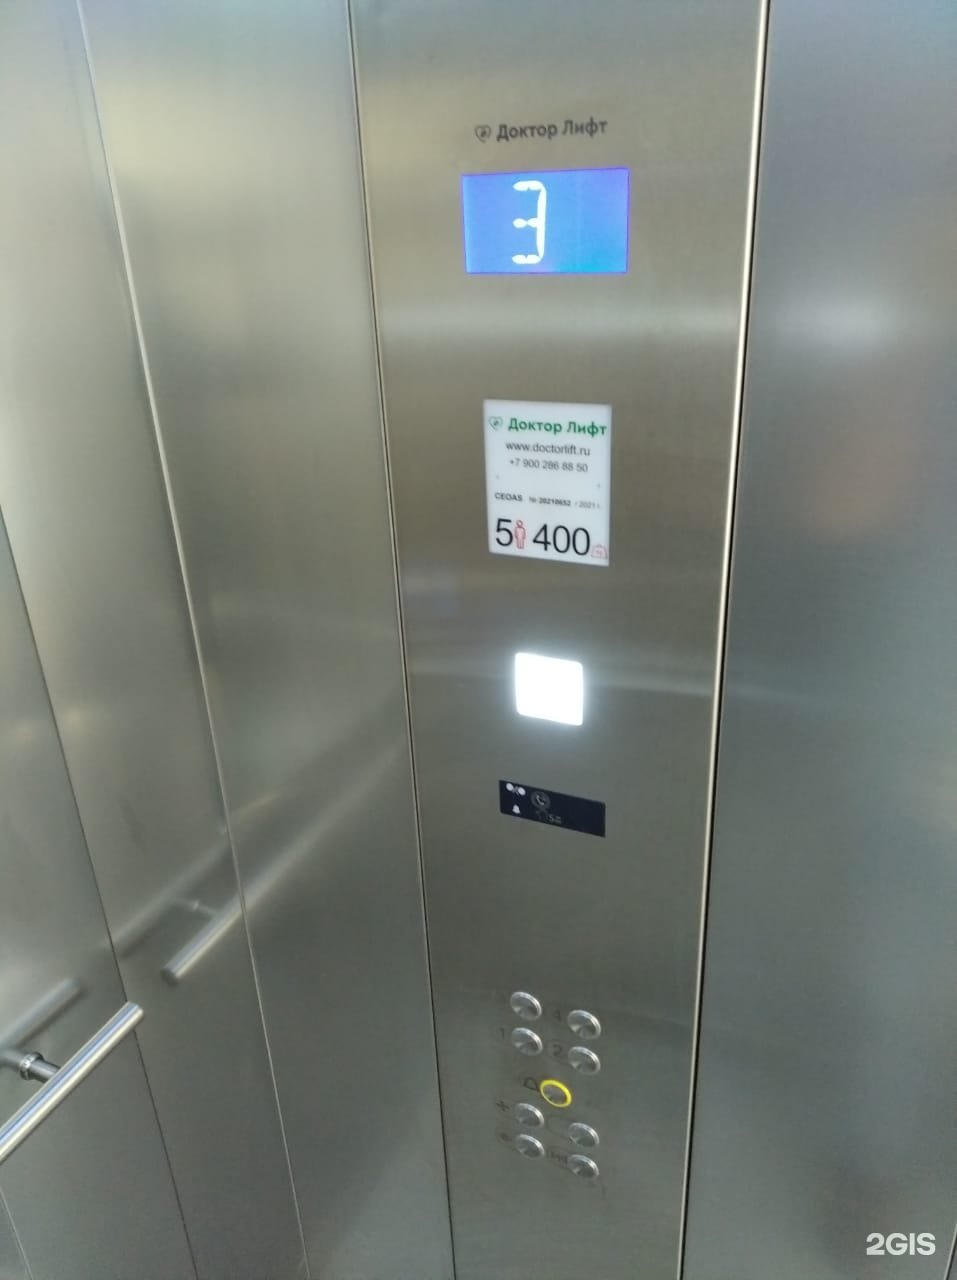 Бц формула. Доктор лифт Сочи. Сервисный лифт. Номер лифтовой компании. Врач в лифте.